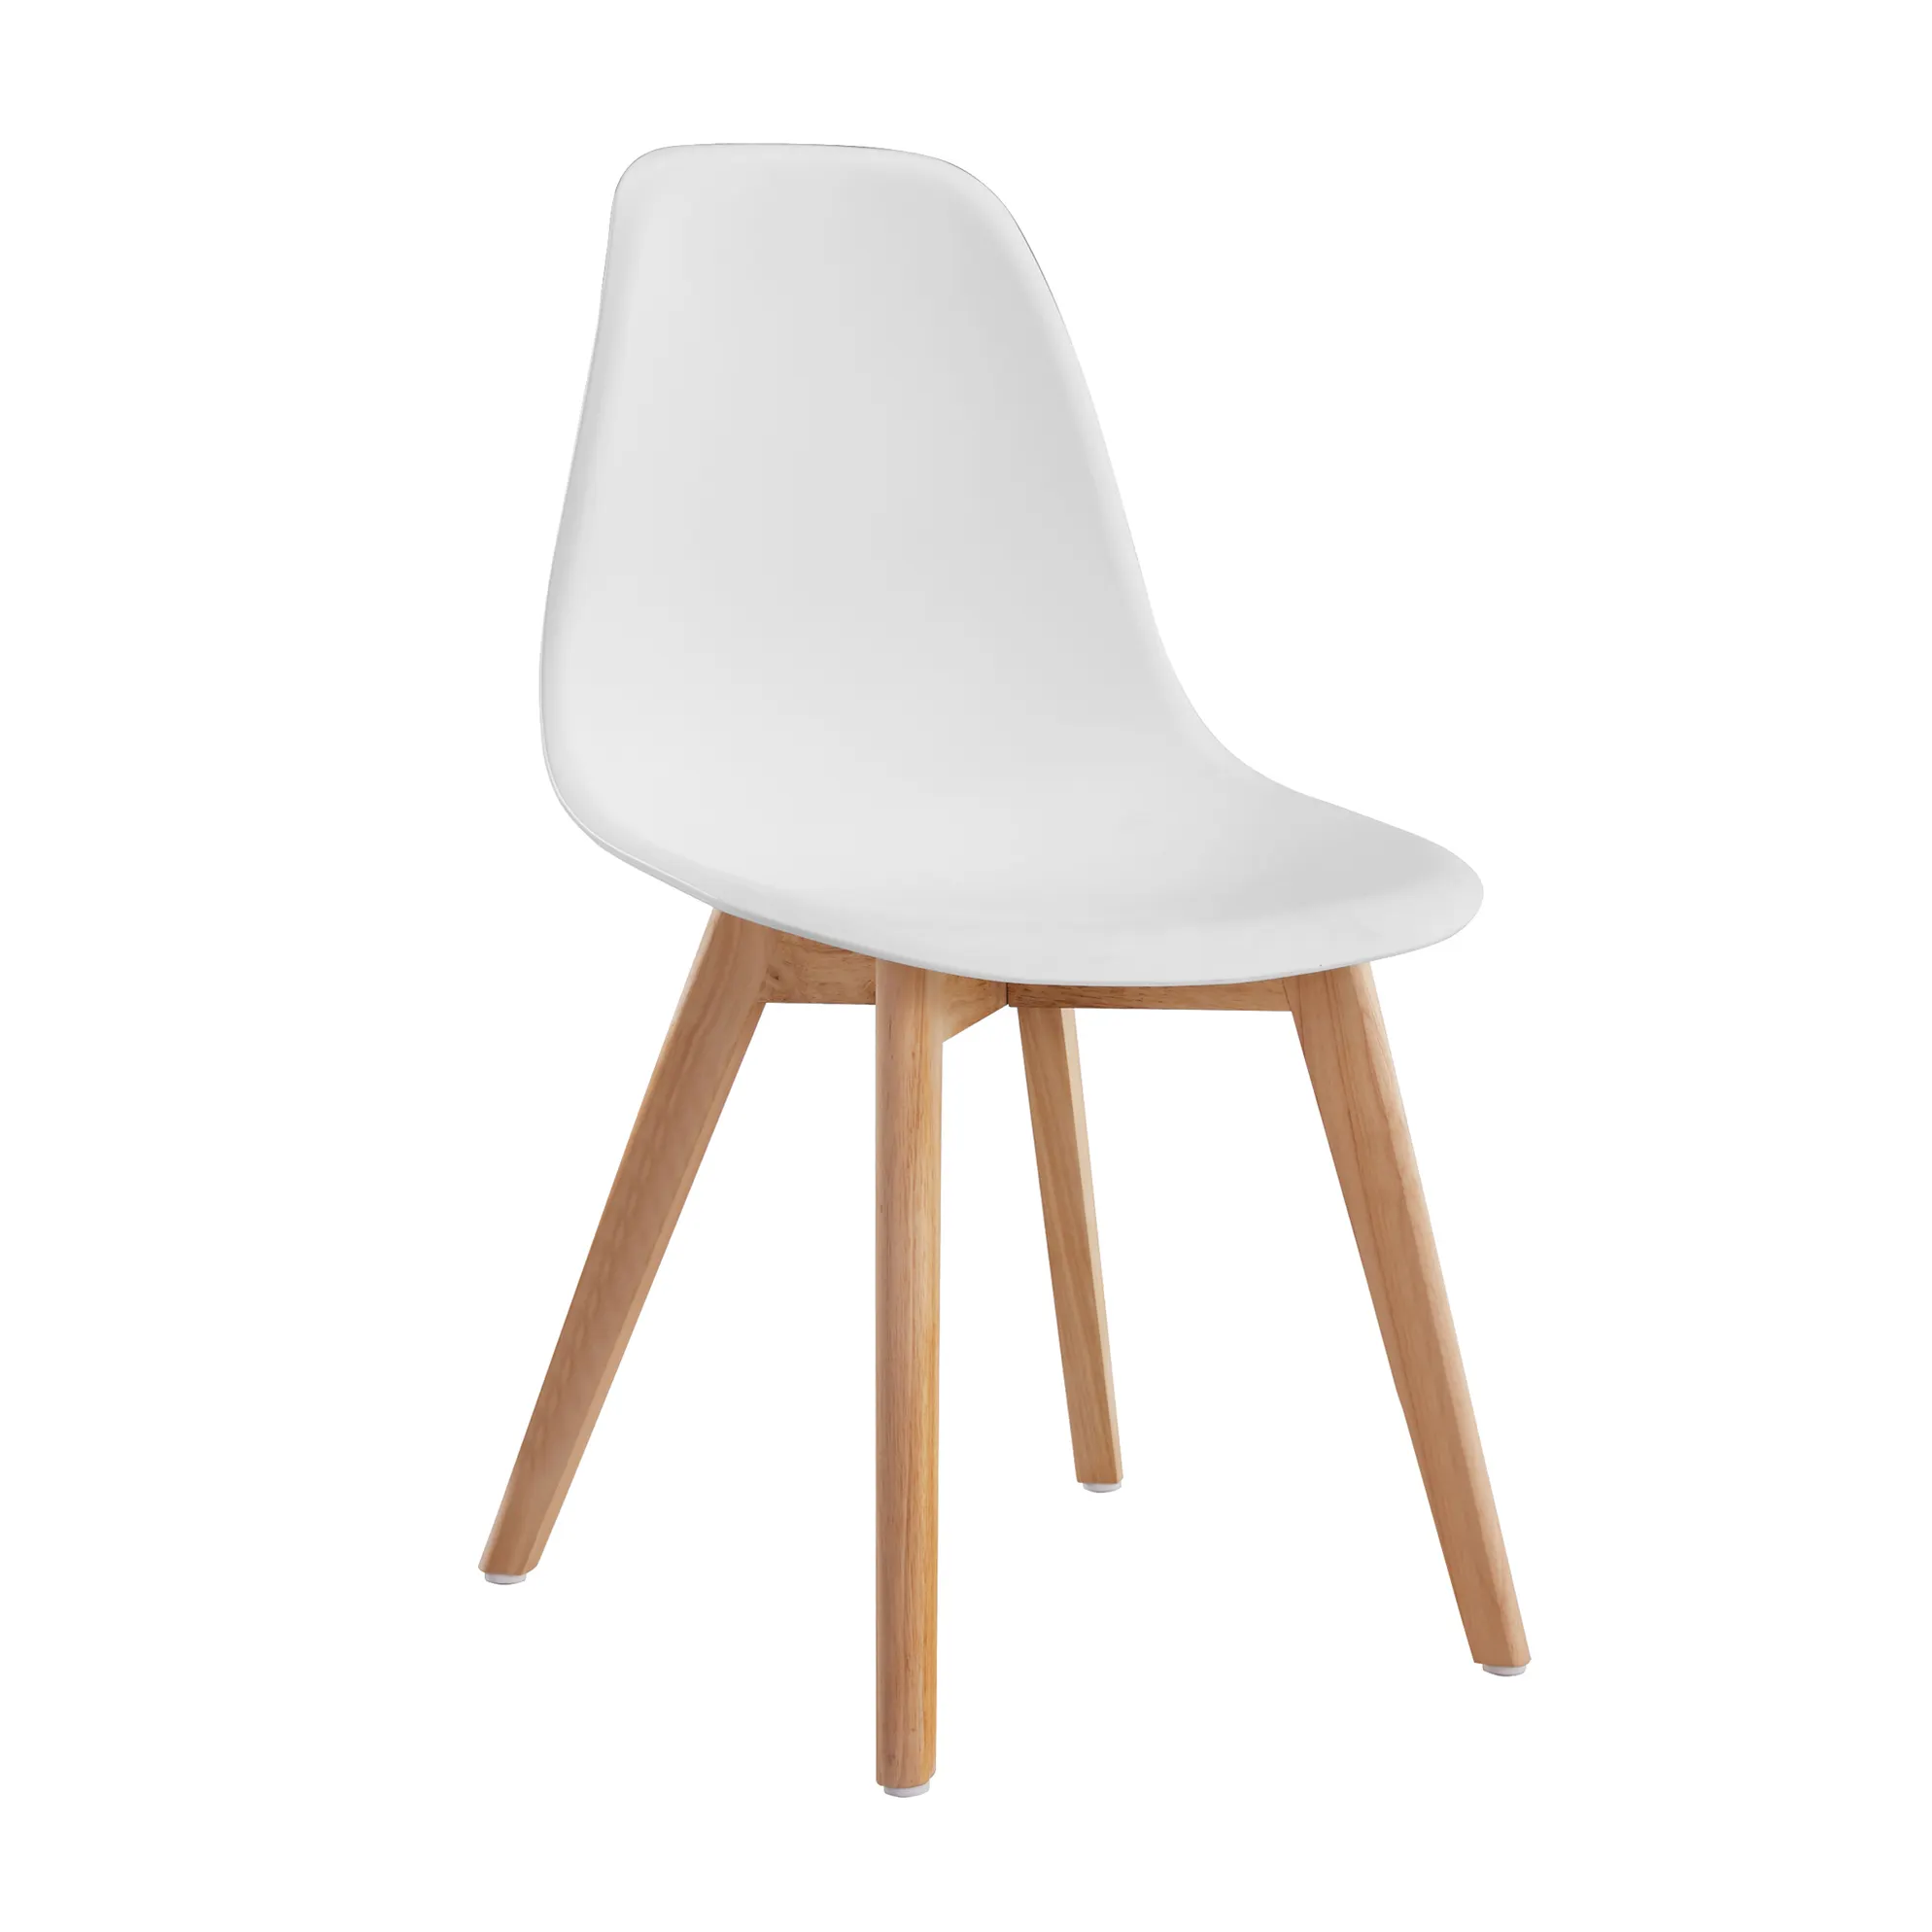 Chaises de salle à manger en polypropylène, chaise de cuisine nordique en plastique avec pieds en bois, mobilier de maison moderne et bon marché, contemporain Silla Nordica